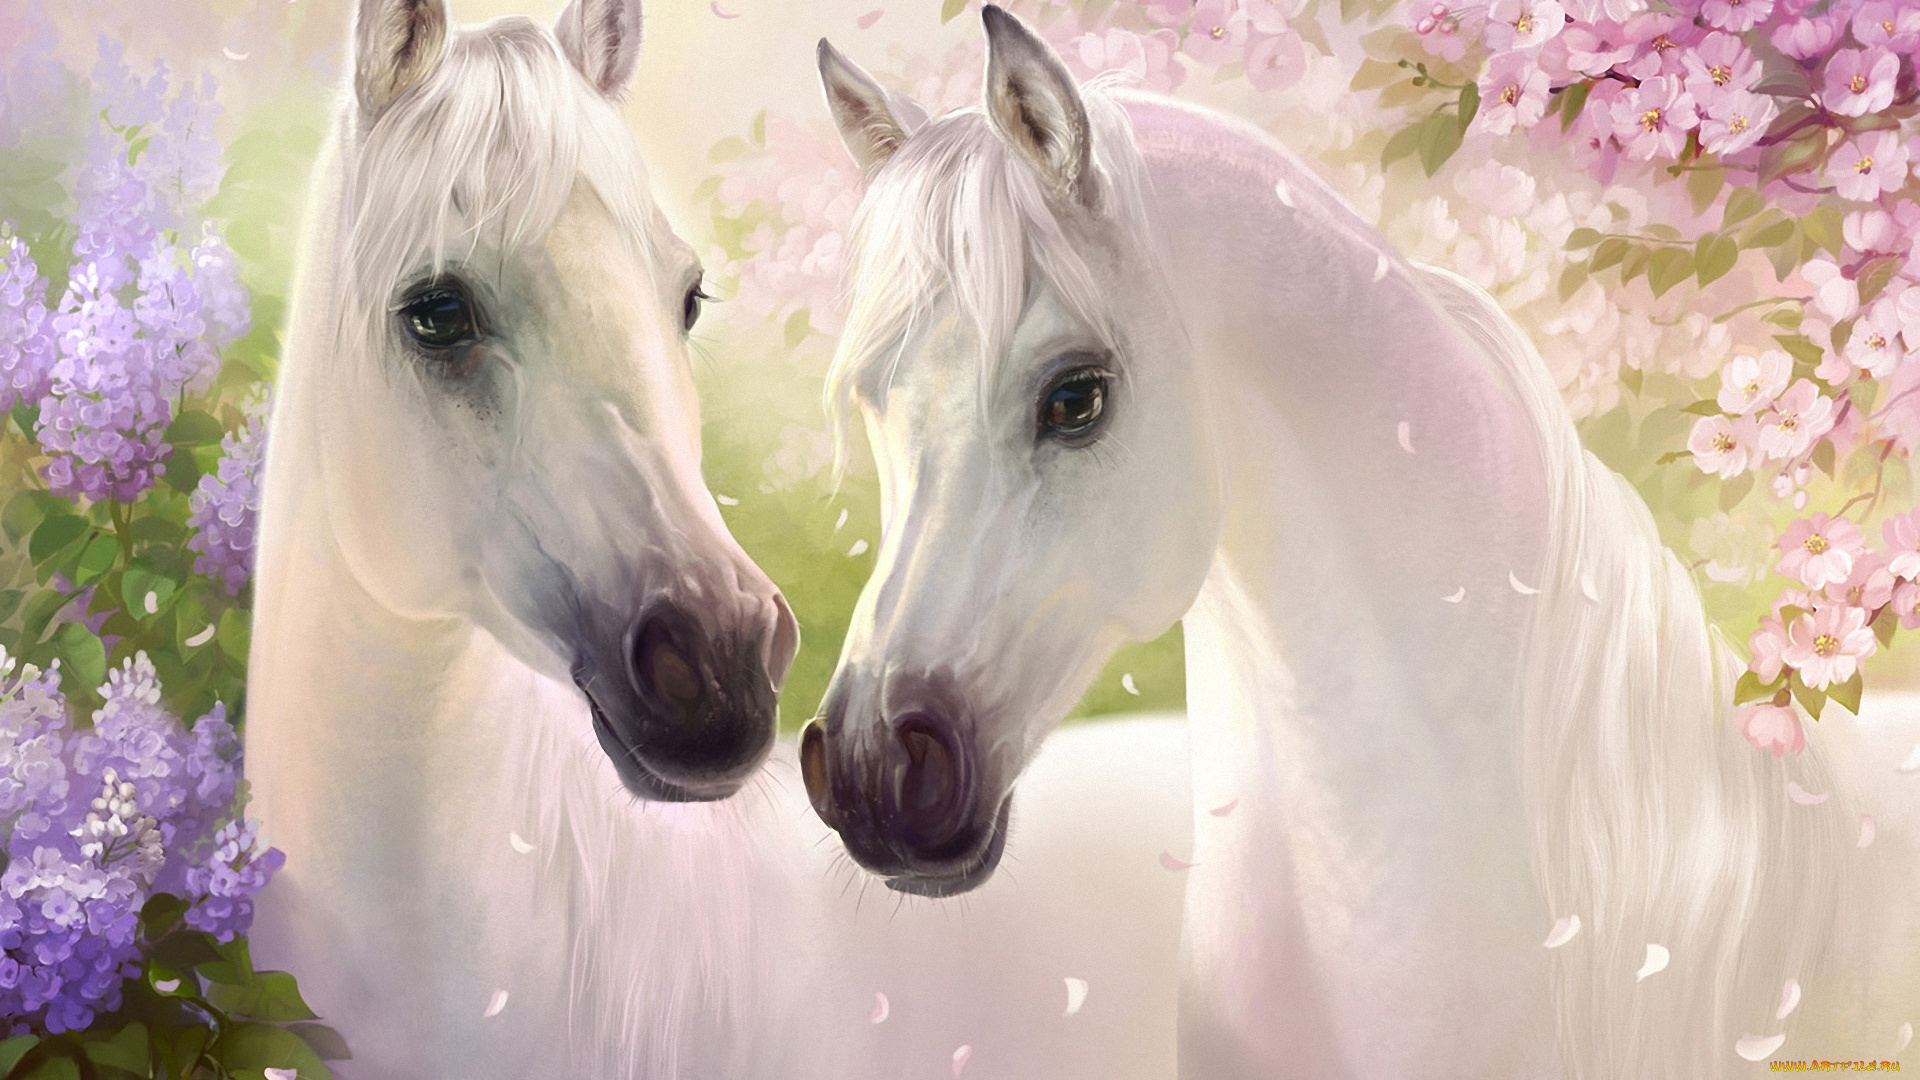 рисованные, животные, , лошади, кони, пара, белые, цветы, сирень, вишня, лепестки, весна